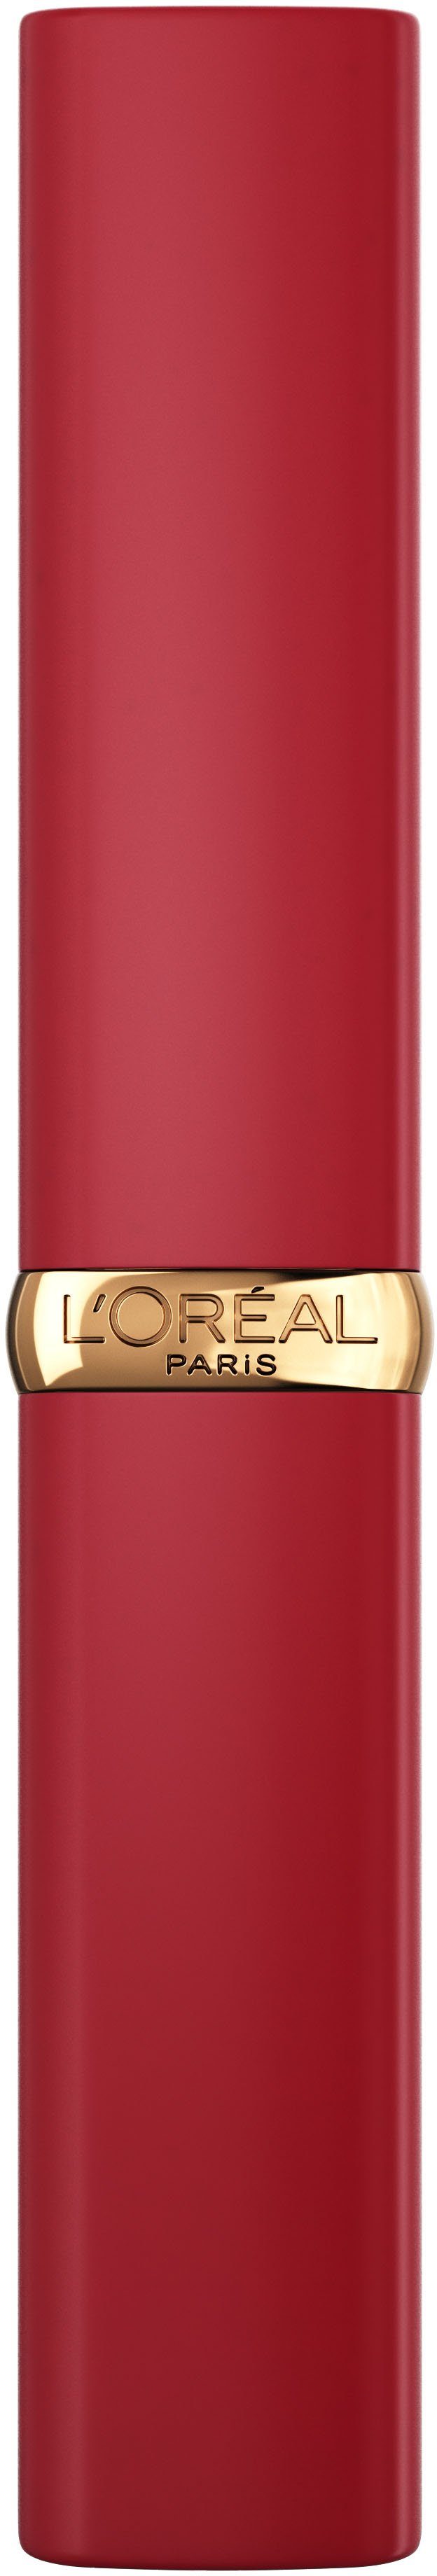 L'ORÉAL PARIS Lippenpflegestift Color Matte Volume Intense Riche